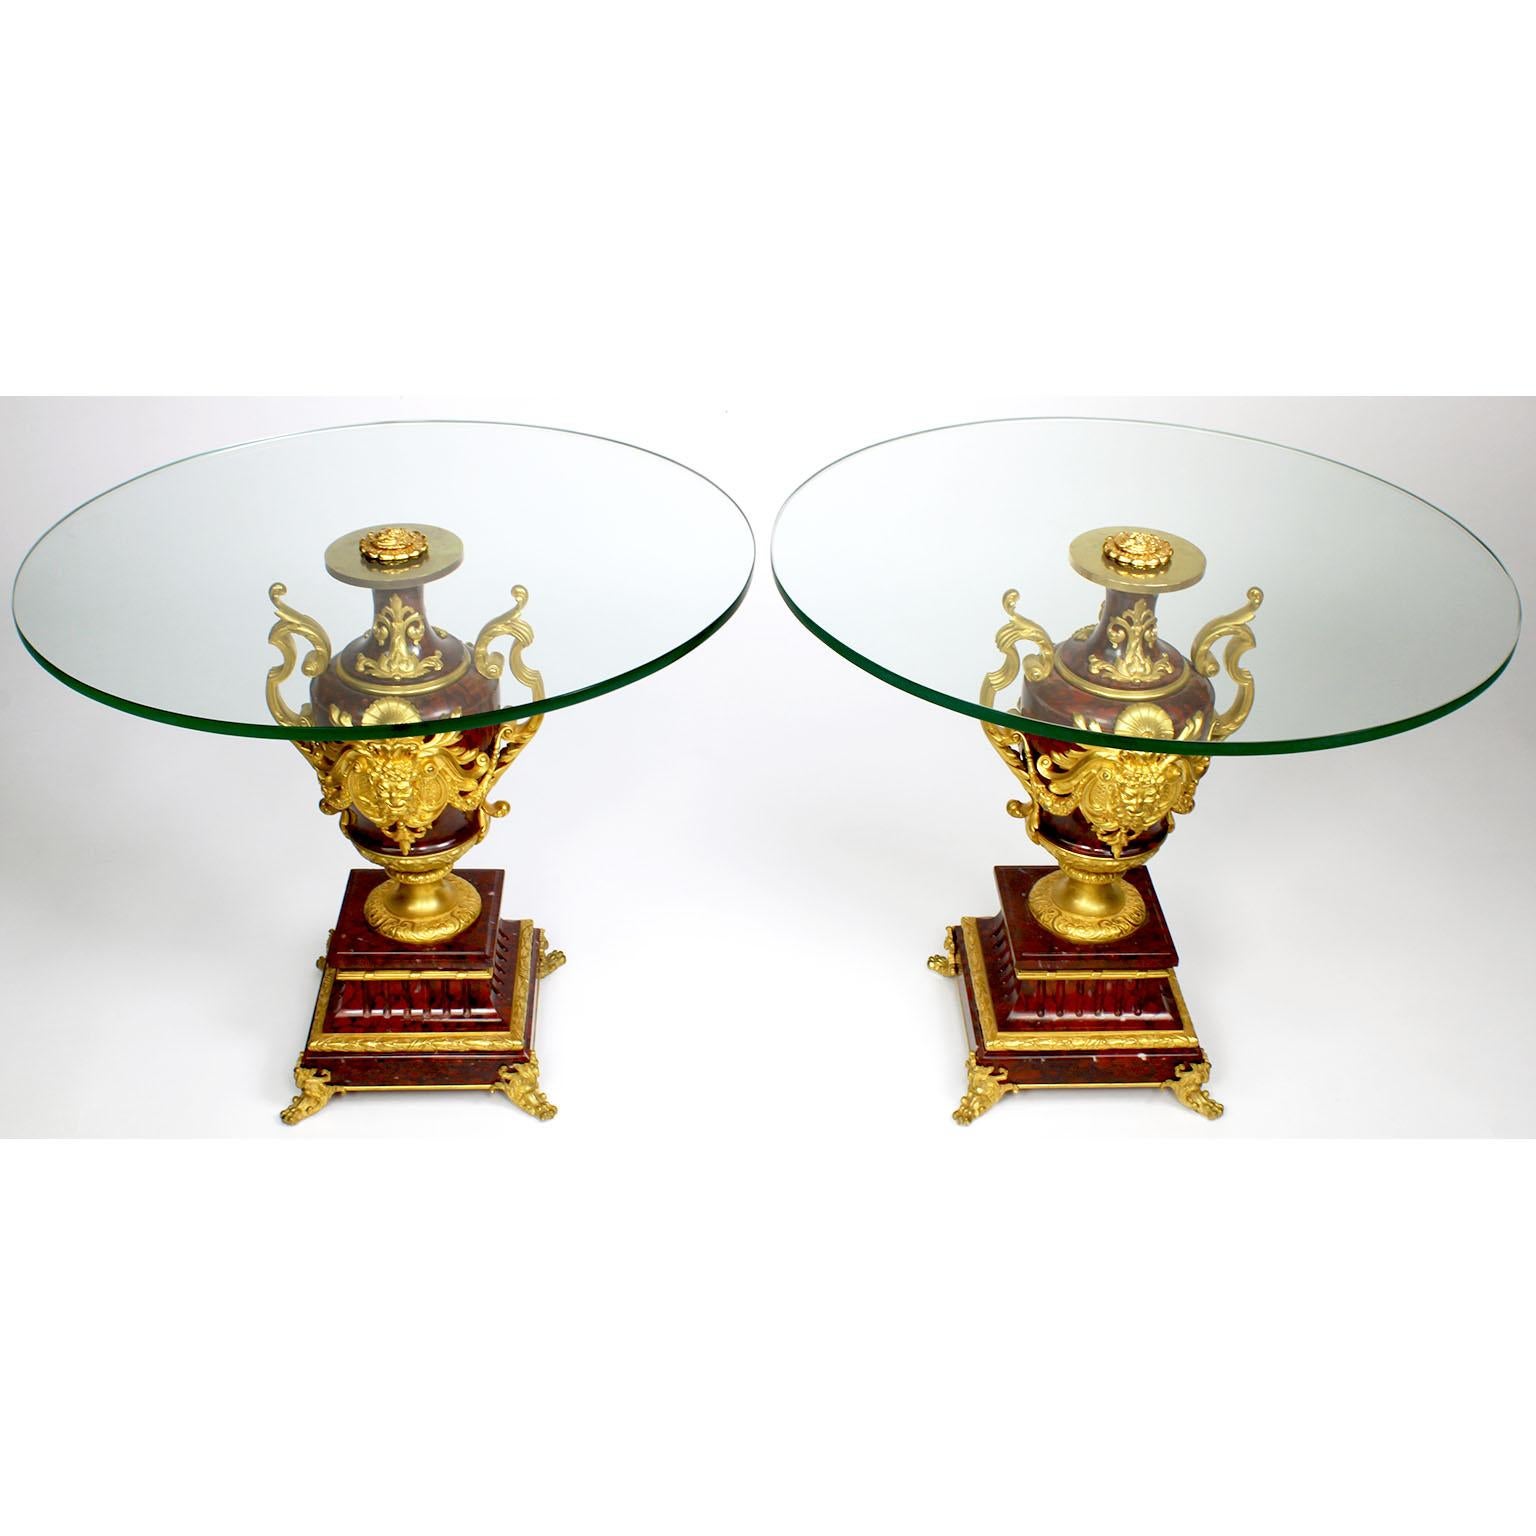 Ein feines Paar französischer Urnen im Louis XV-Stil mit Ormolu und Rouge Griotte-Marmor von Ferdinand Barbedienne (Franzose, 1810-1892), die jetzt zu niedrigen Beistelltischen mit Glasplatten umgebaut wurden. Die eiförmigen Urnen sind mit fein